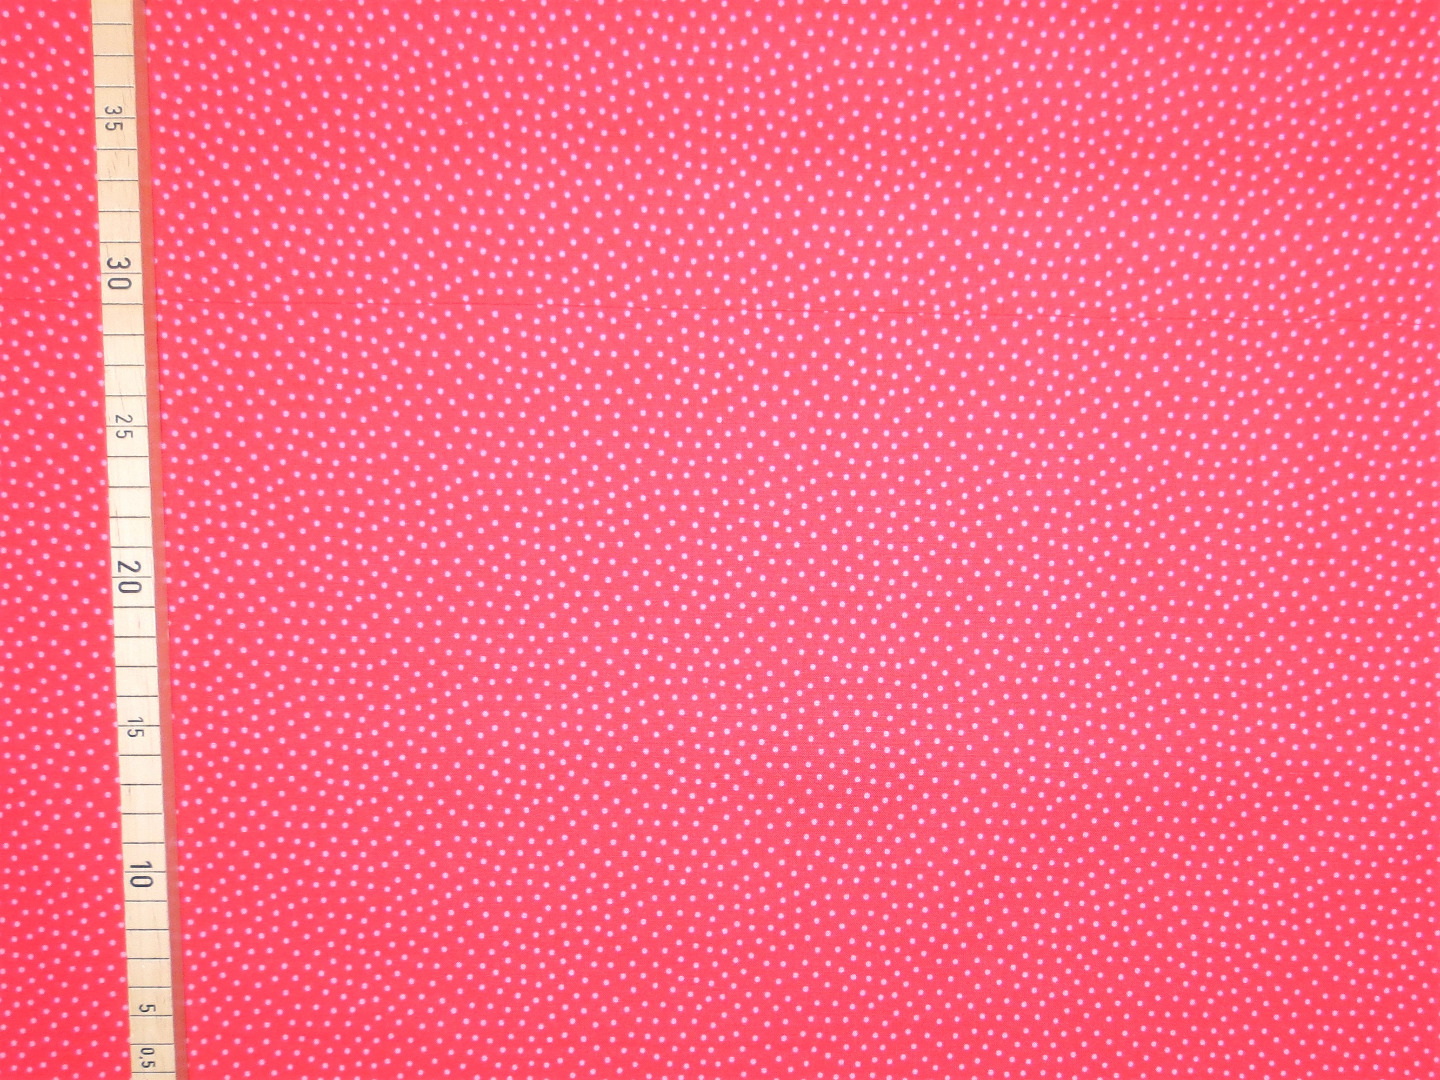 Baumwollstoff Pünktchen - rot-rosa - Westfalenstoffe - 100 Baumwolle - Junge Linie 2